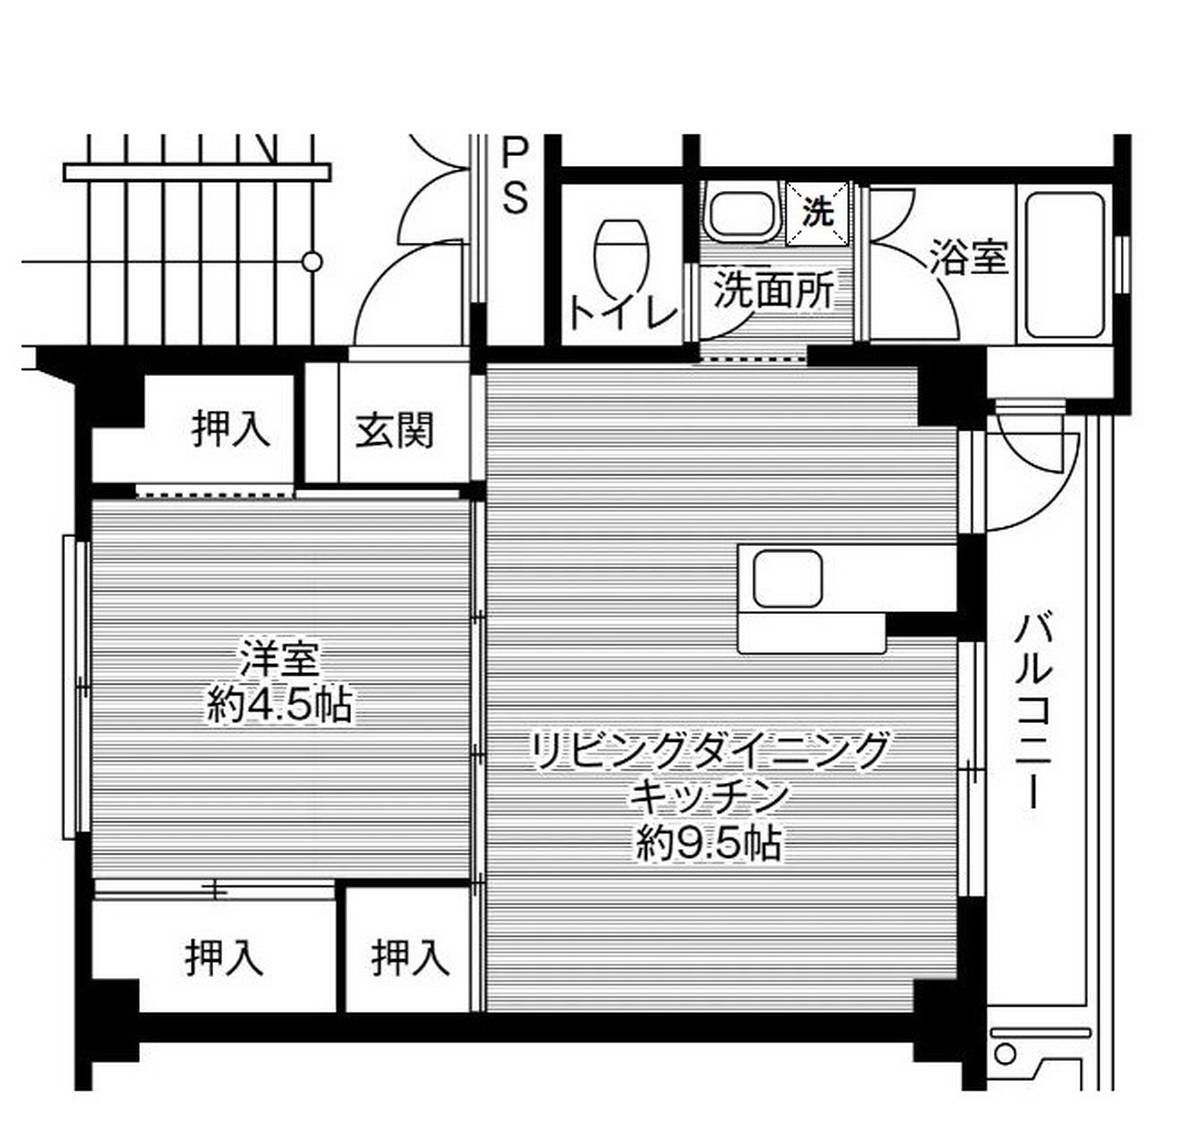 1LDK floorplan of Village House Taniyama in Kagoshima-shi